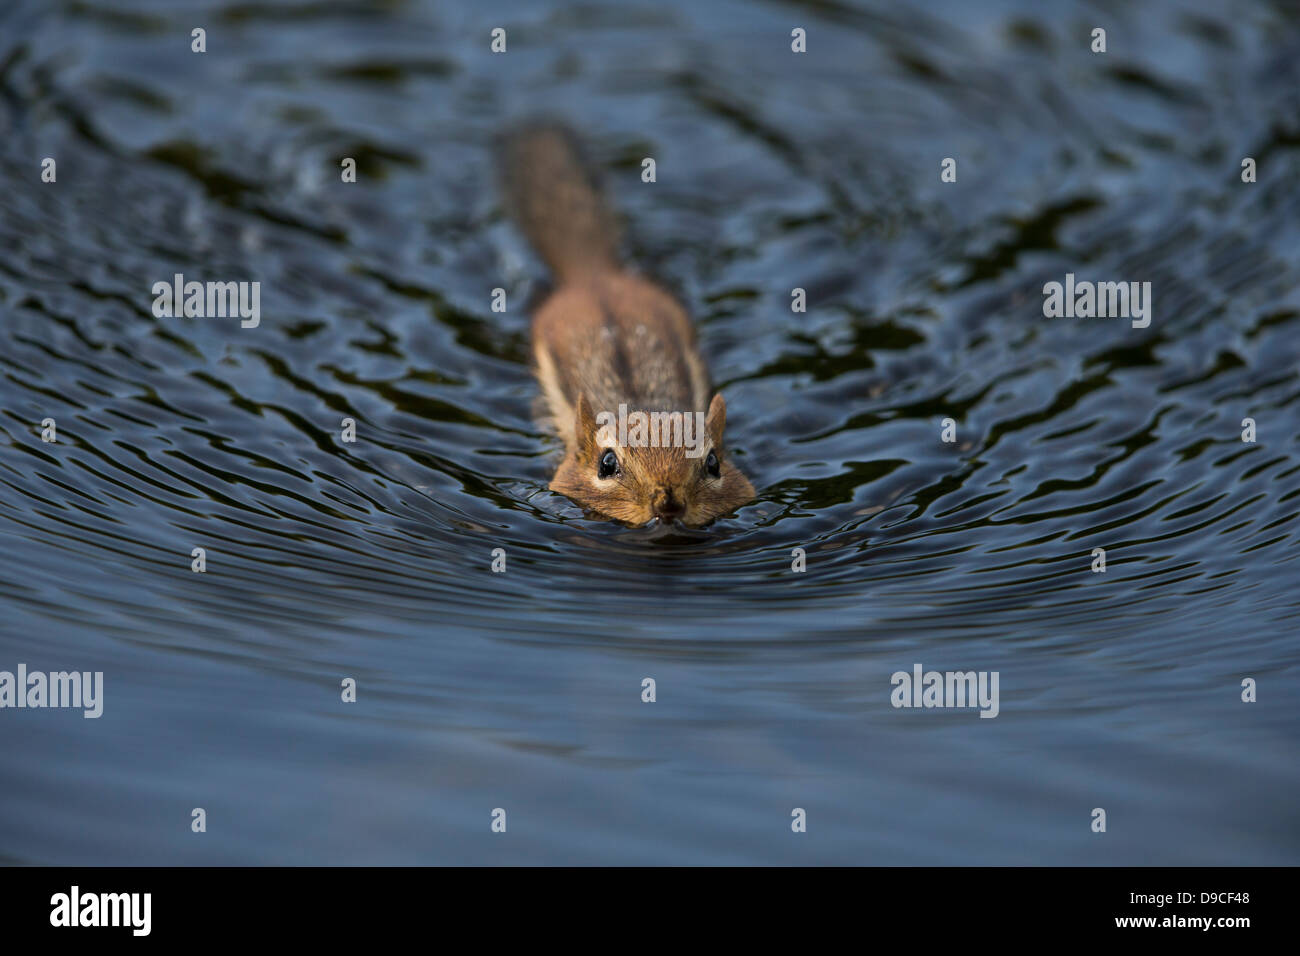 Le Tamia rayé (Tamias striatus) baignade dans un petit lac à Doodle Ville, Parc d'état de Bear Mountain, New York. Banque D'Images